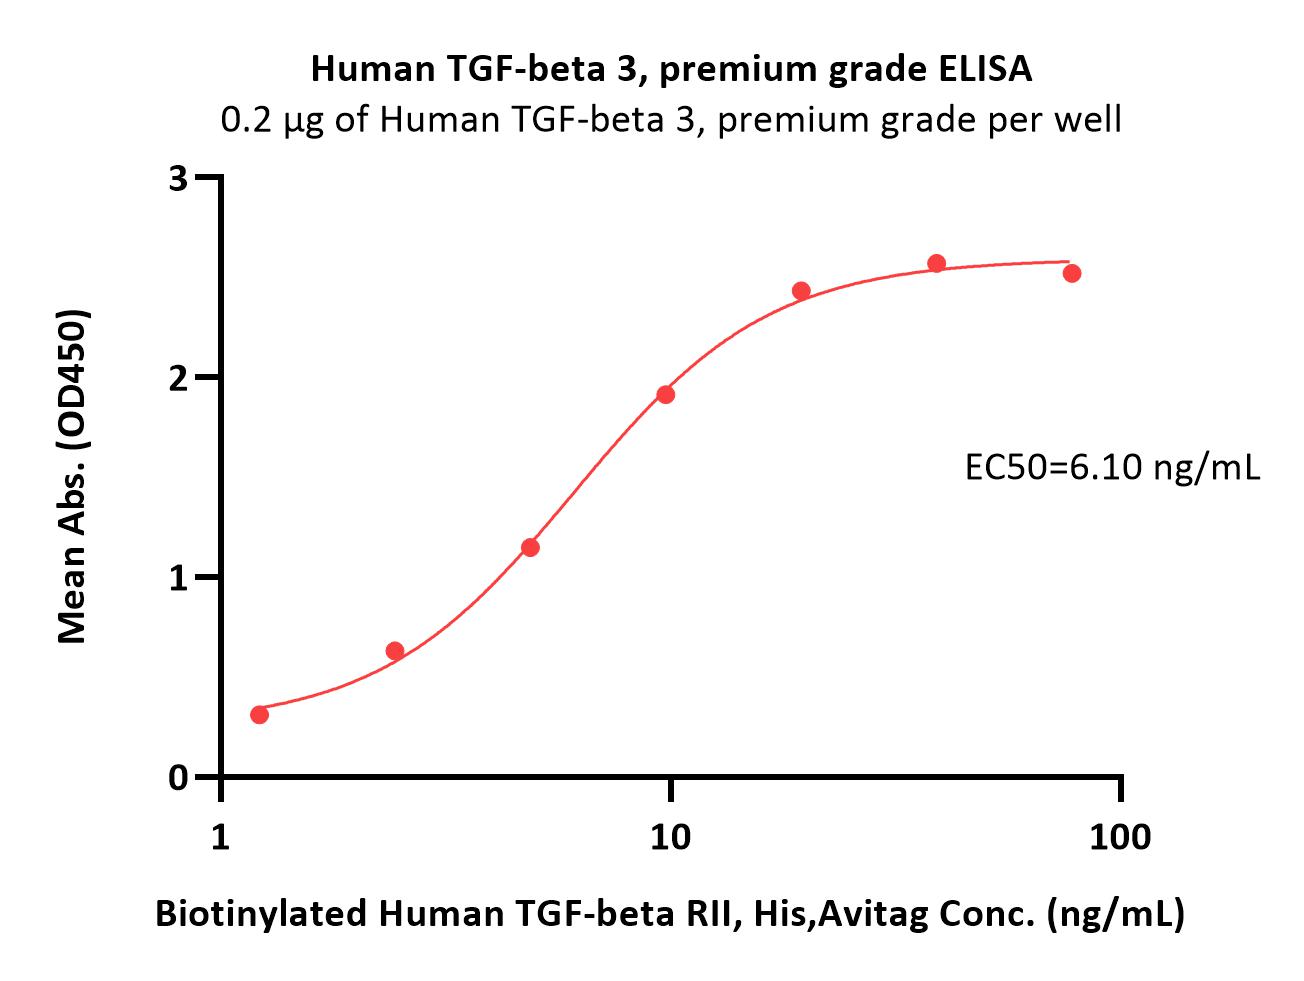 TGF-beta 3 ELISA